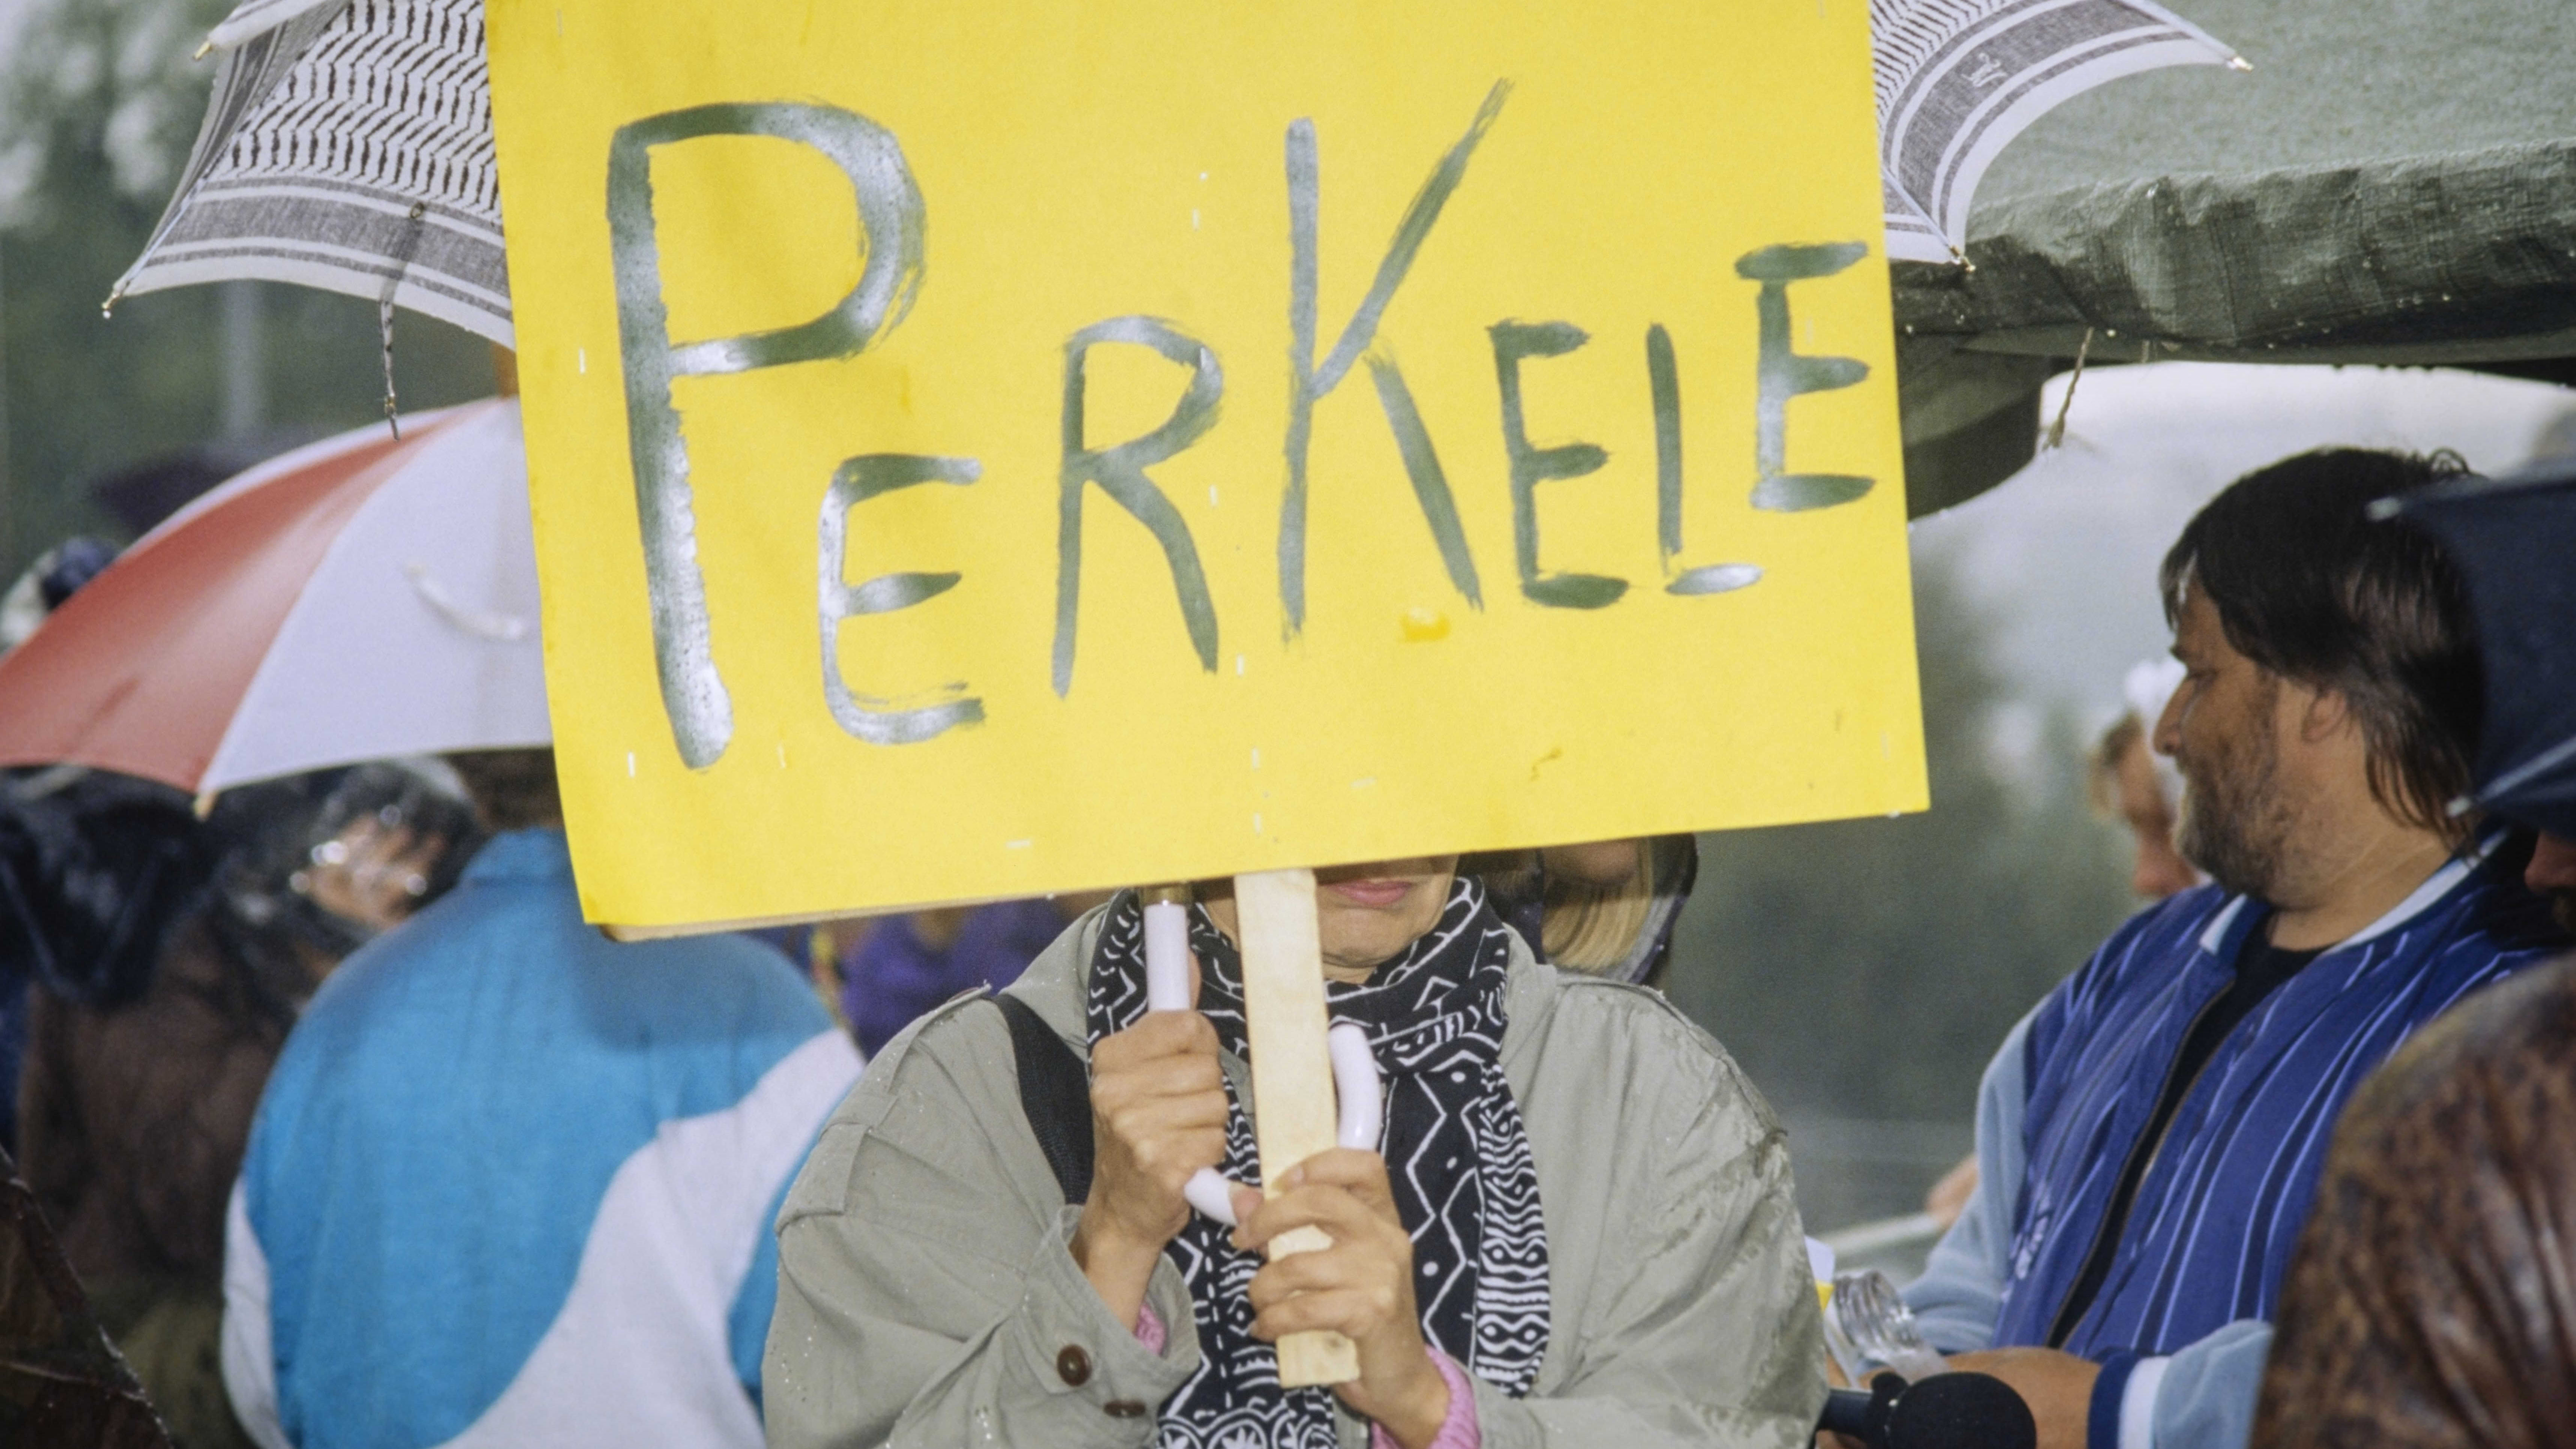 Työttömien mielenosoitus Helsingissä, marssijoita iskulauseineen ja banderolleineen eduskuntatalon edessä, henkilö pitelee kylttiä, jossa lukee "Perkele", 2. syyskuuta 1993.